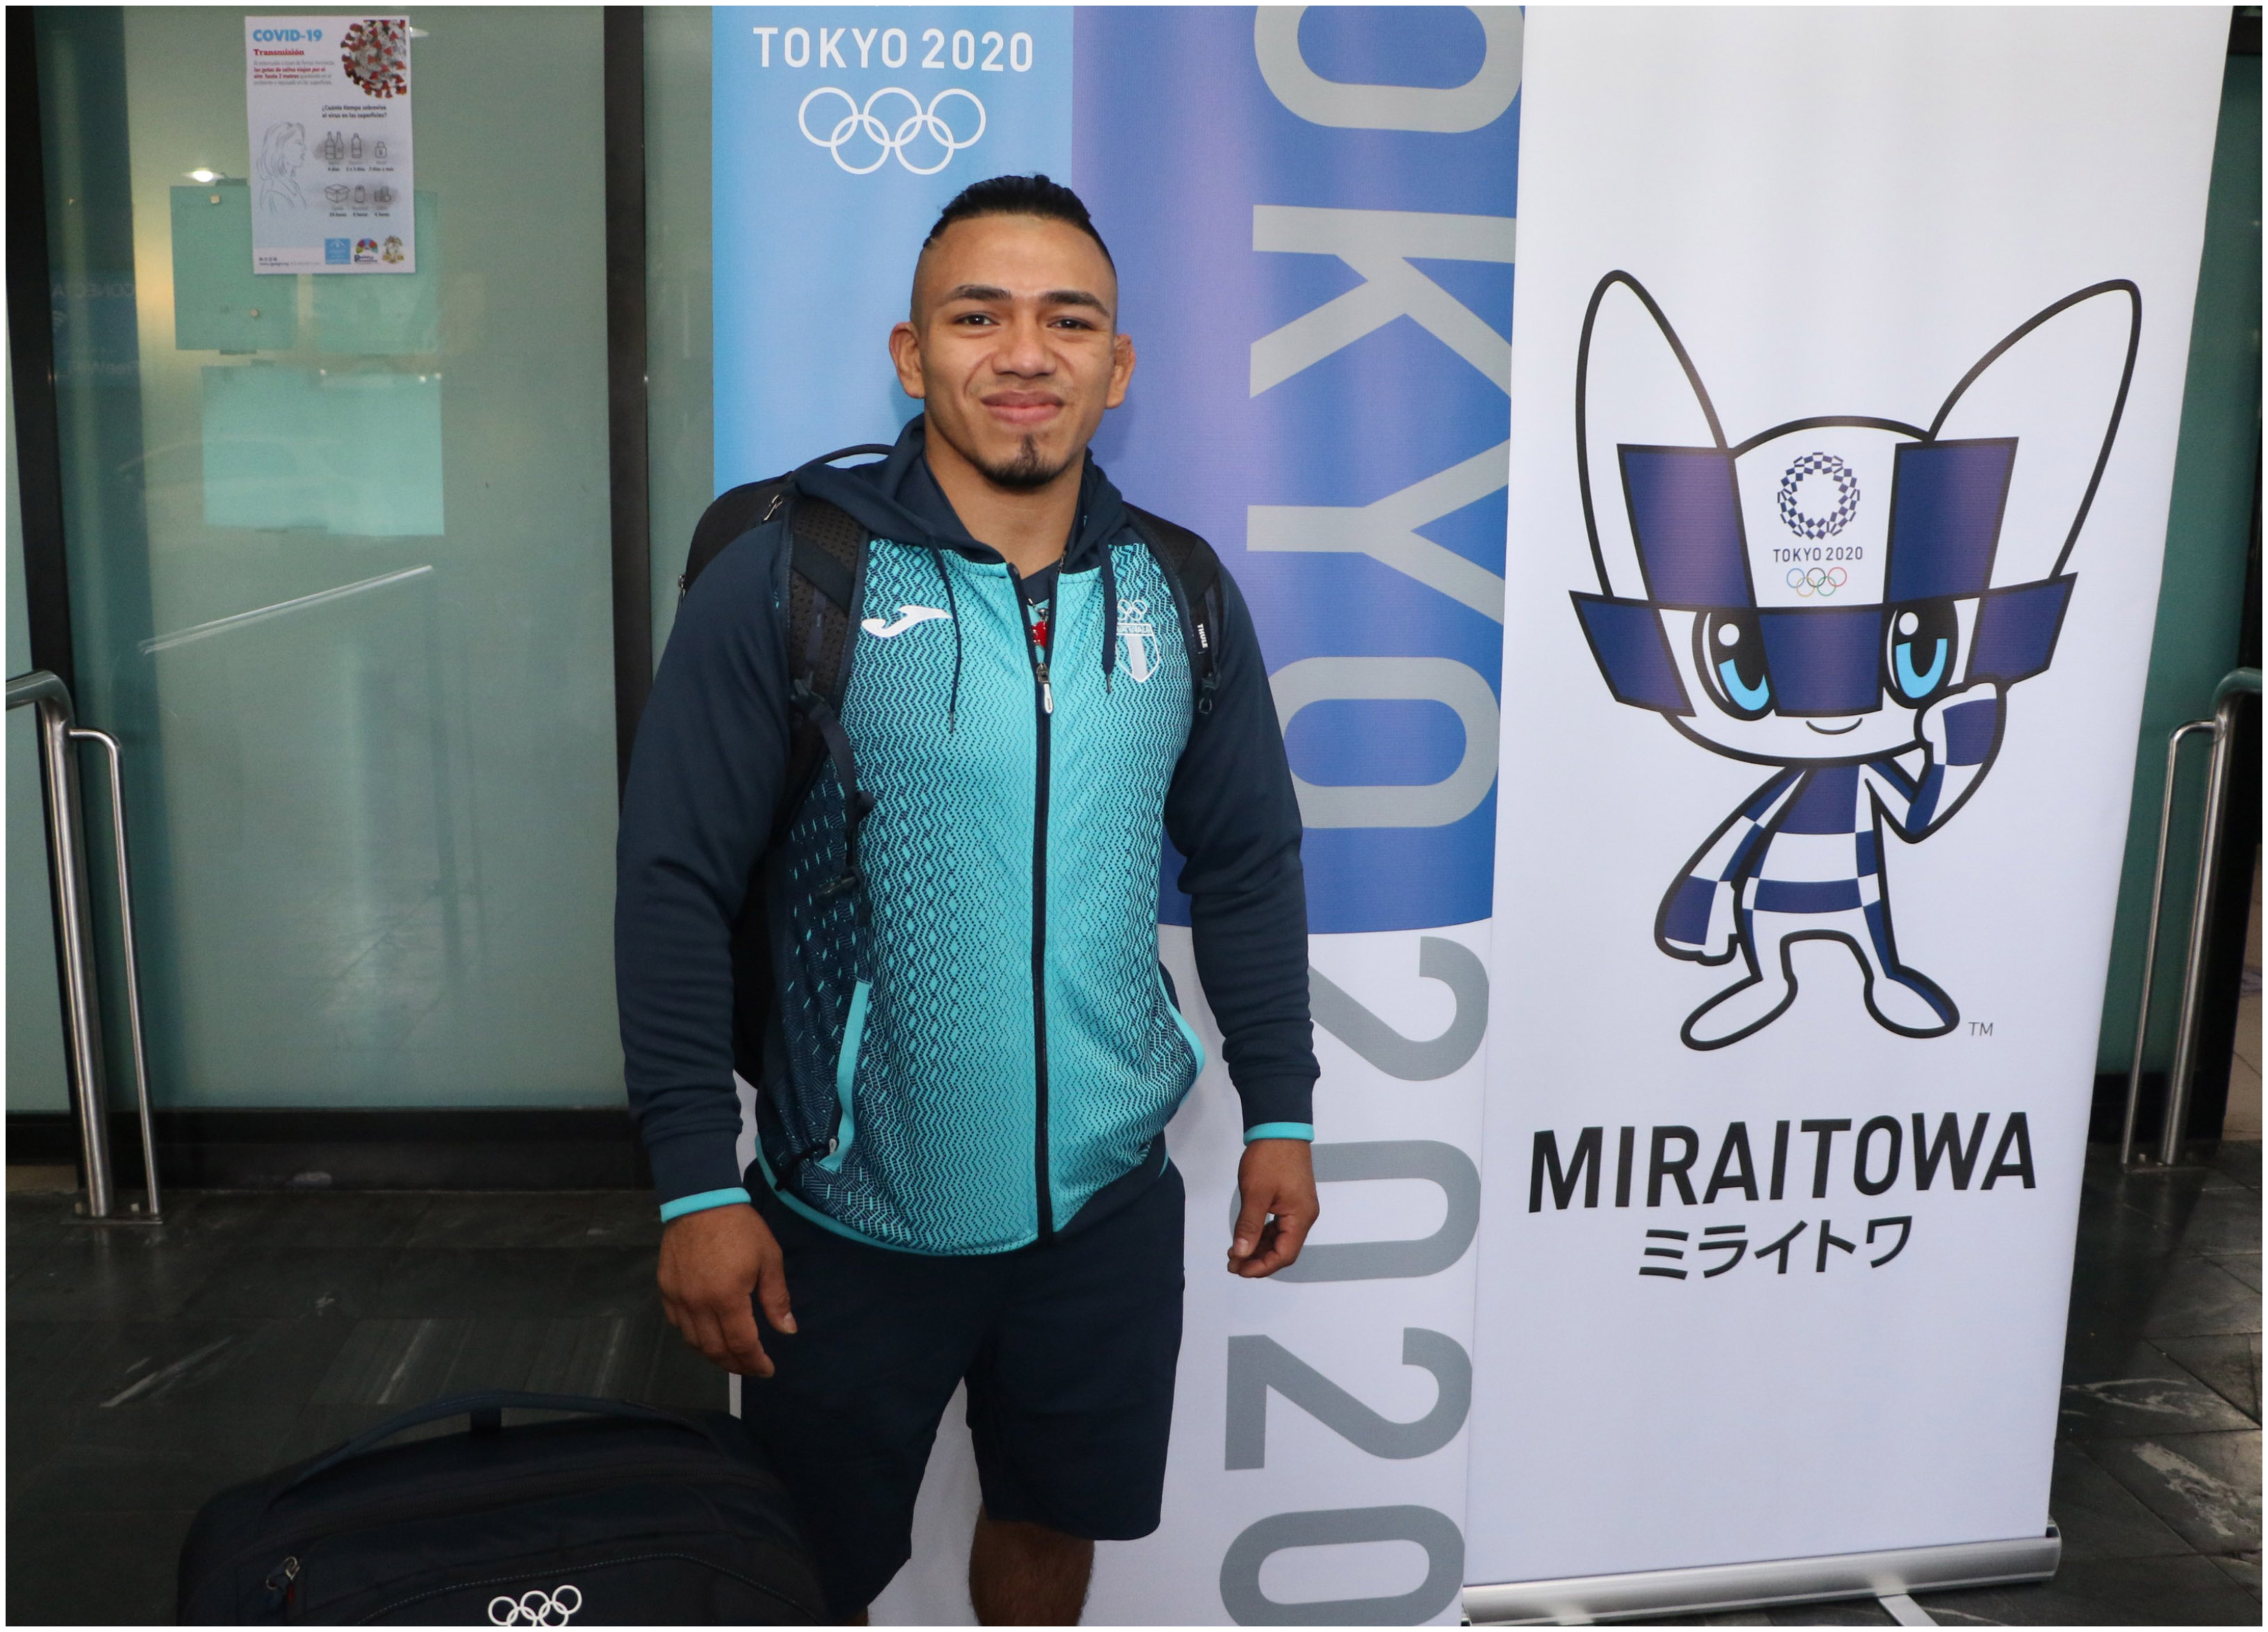 El judoca José Ramos partió a Japón a un campamento de preparación antes de competir en los Juegos Olímpicos el 24 de julio próximo. Foto Prensa Libre: COG